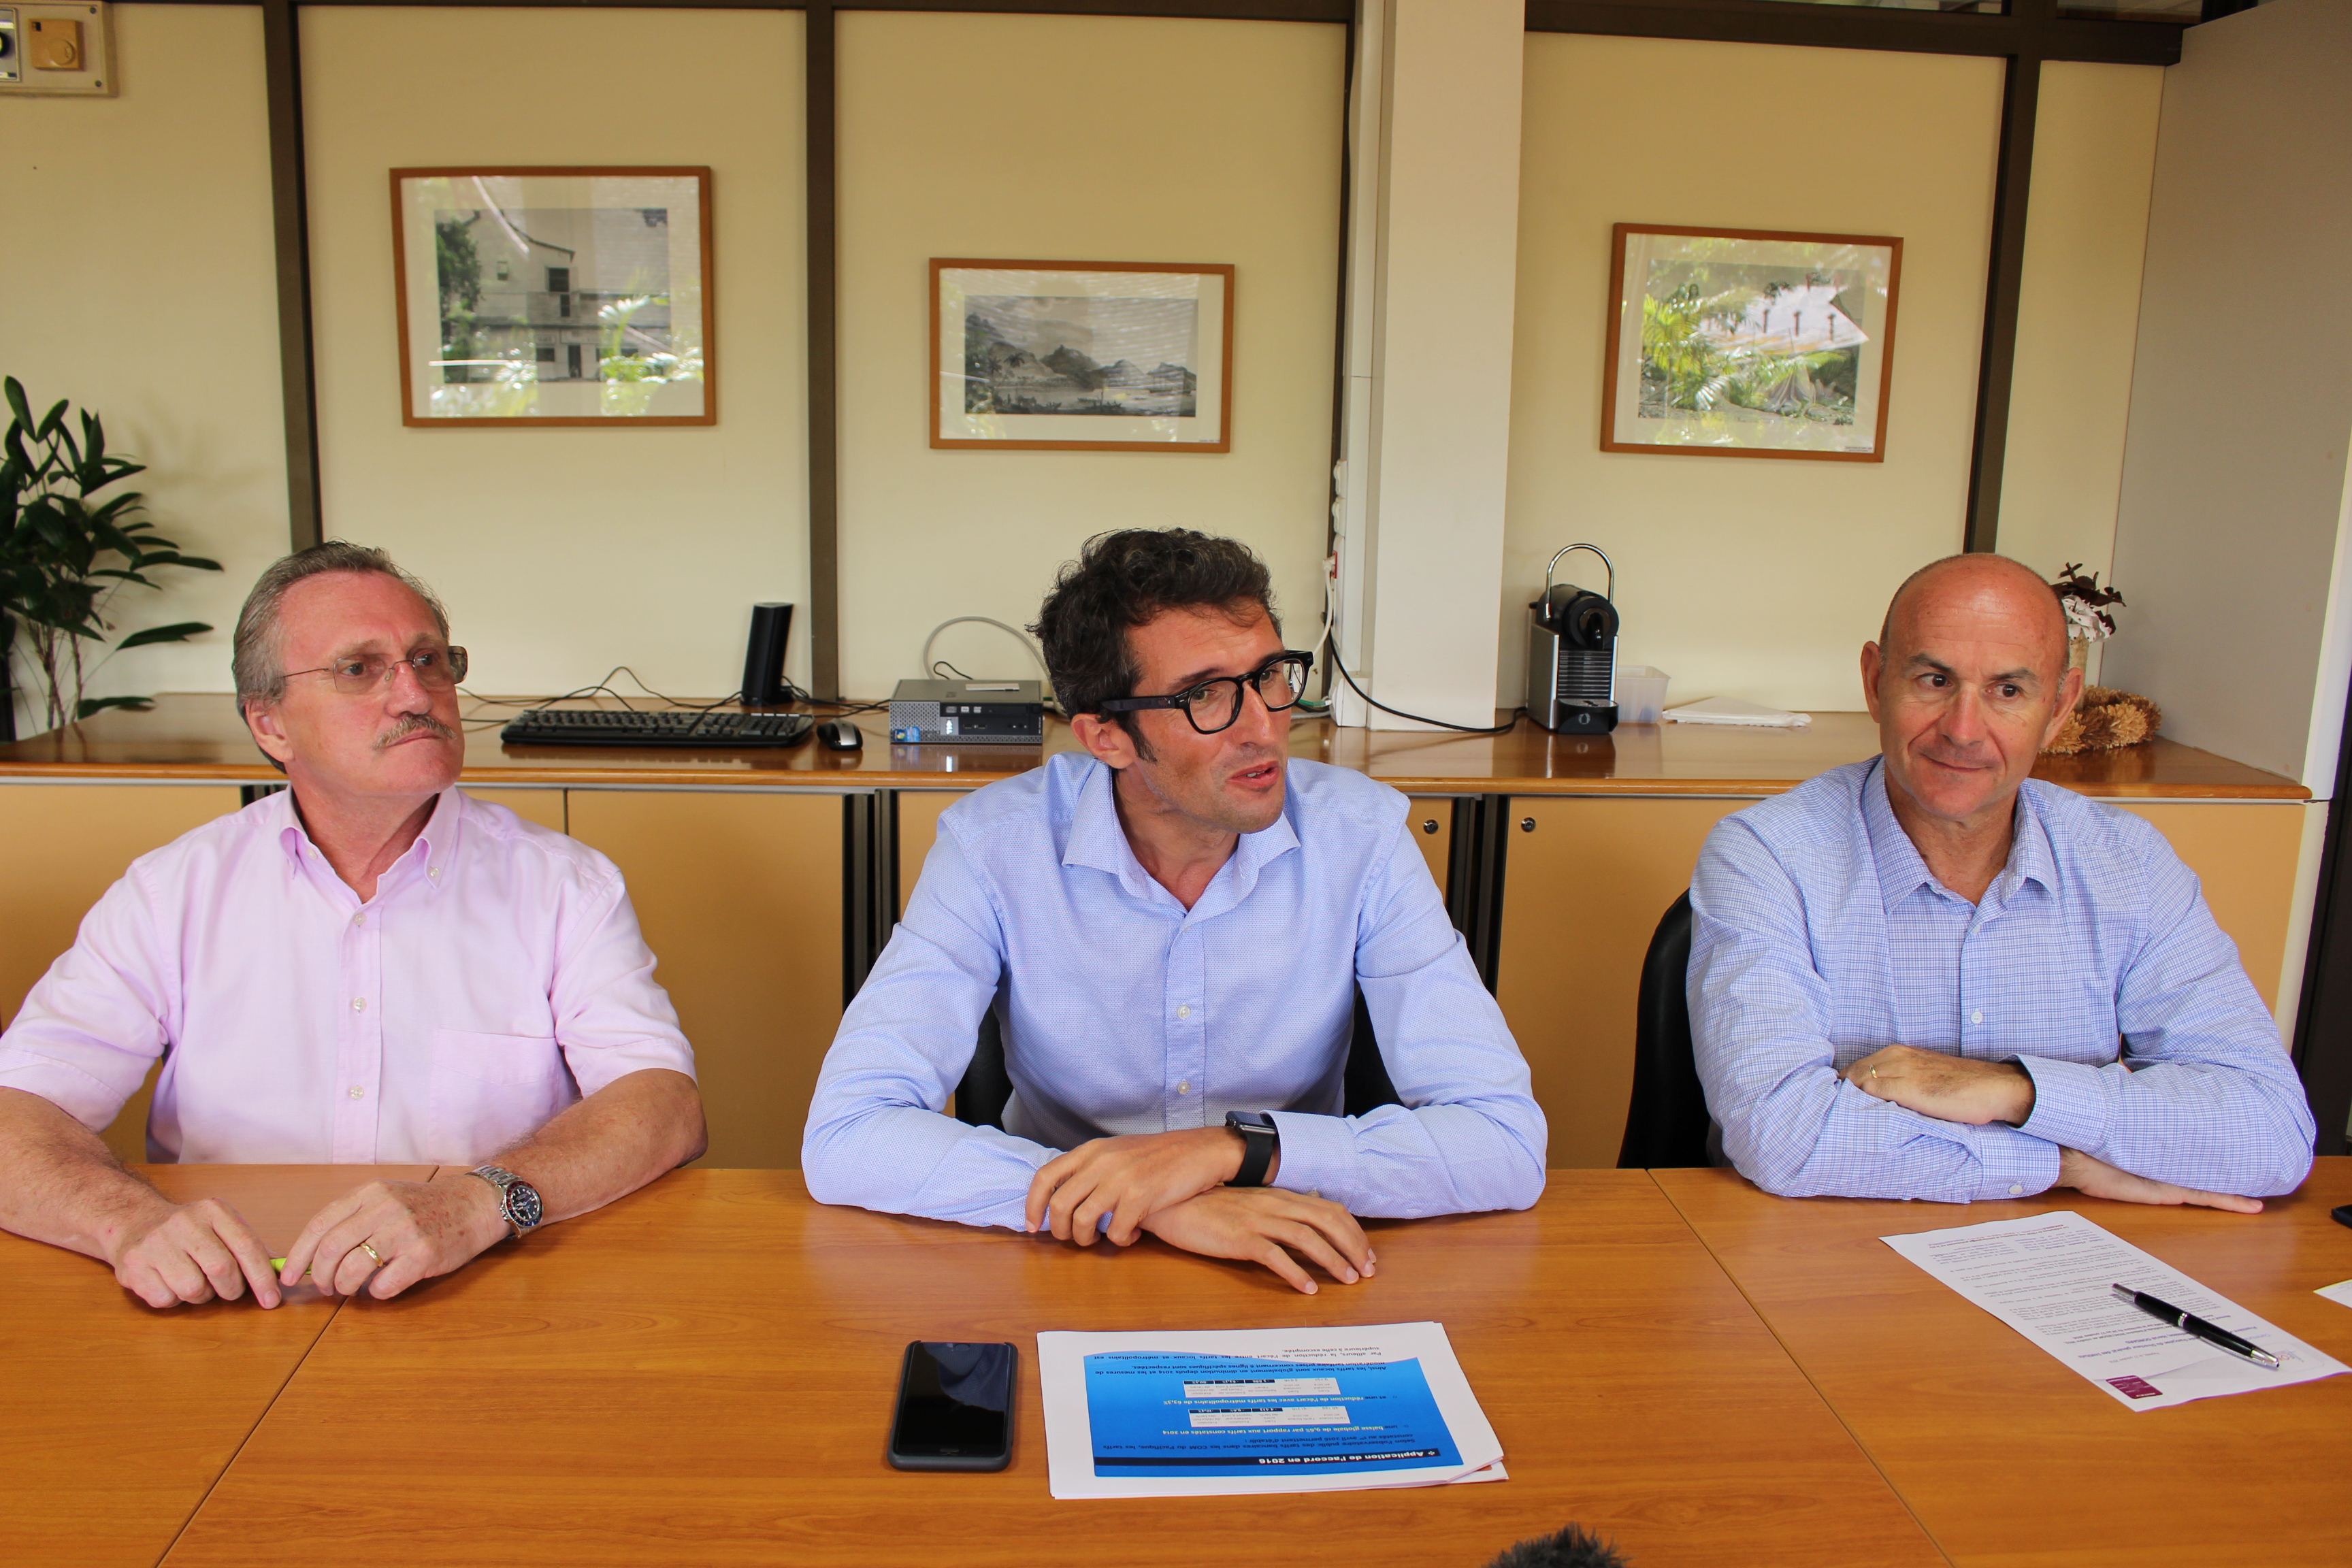 De gauche à droite : Claude Perriou, directeur de l’institut d’émission d’outremer (IEOM), Hervé Gonsard, directeur général des instituts d’émission IEOM/IEDOM et Philippe La Cognata, directeur des instituts d’émission.